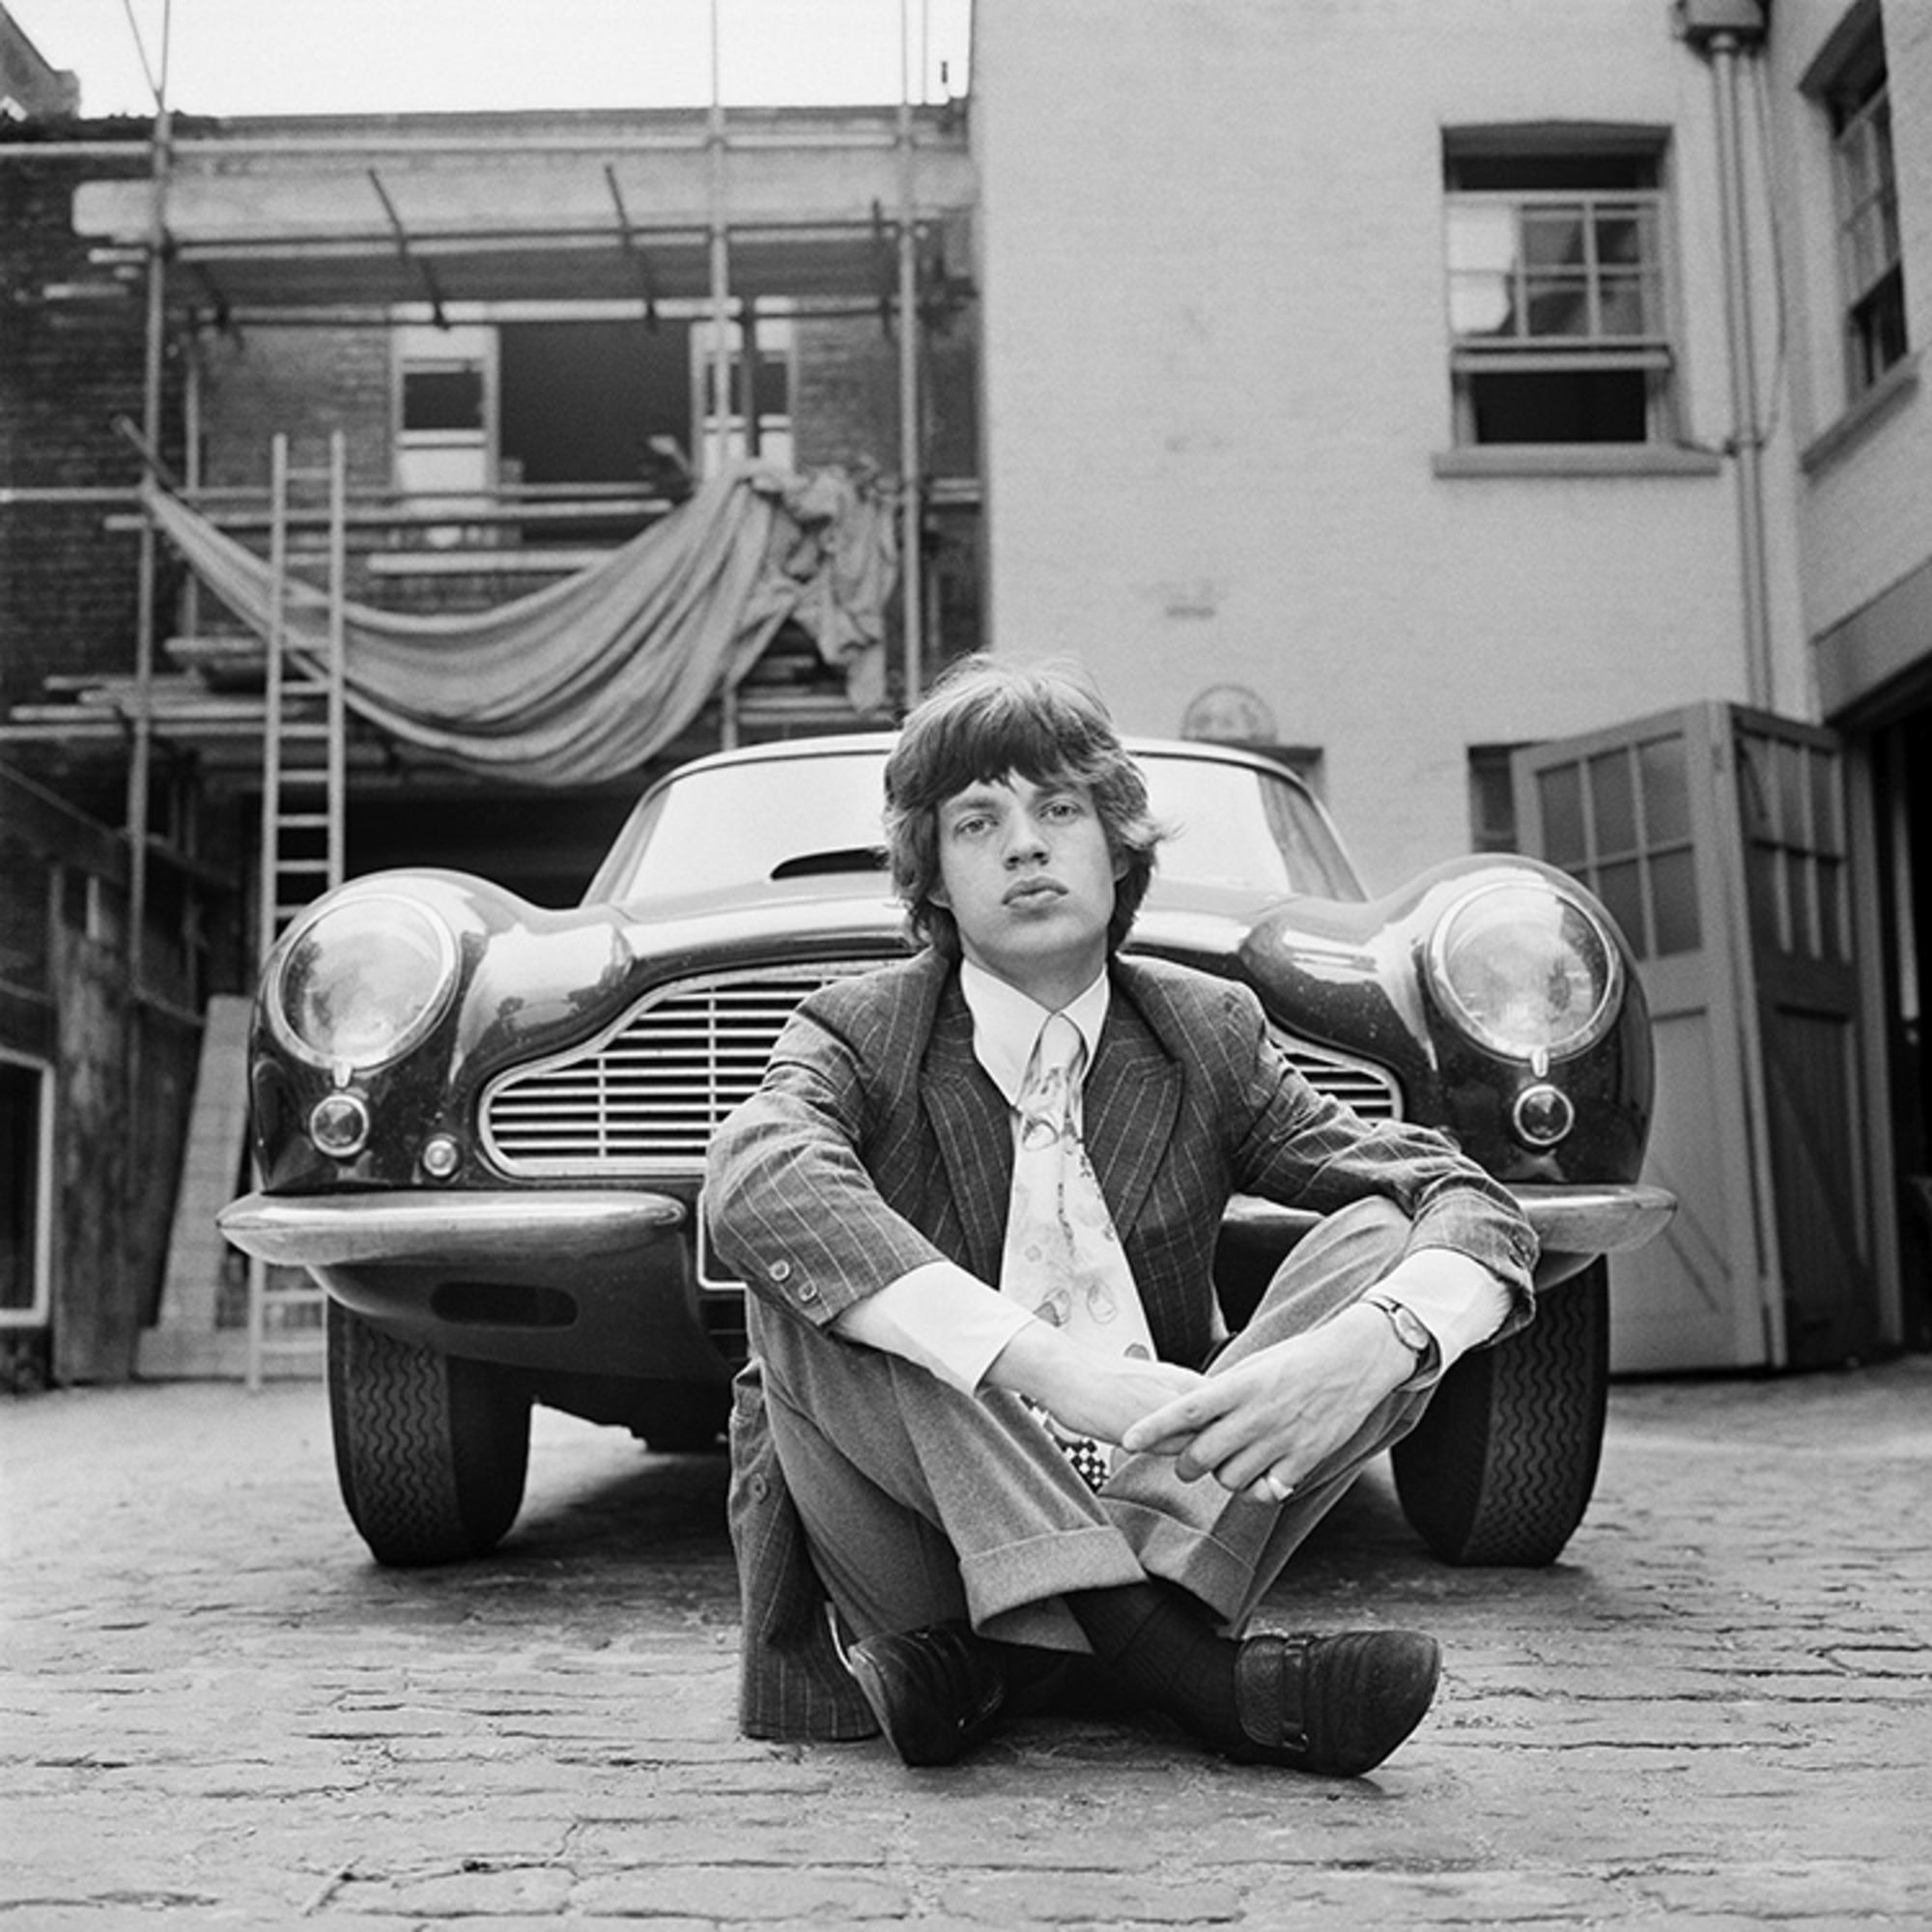 Gelatine-Silber, signiert und nummeriert

Mick Jagger von der britischen Rockband The Rolling Stones, fotografiert neben einem Aston Martin DB6 in London, 1966.

Verfügbare Größen:
16" x 20" Auflage von 50
50" x 53" Auflage von 24 Stück

Dieses Foto